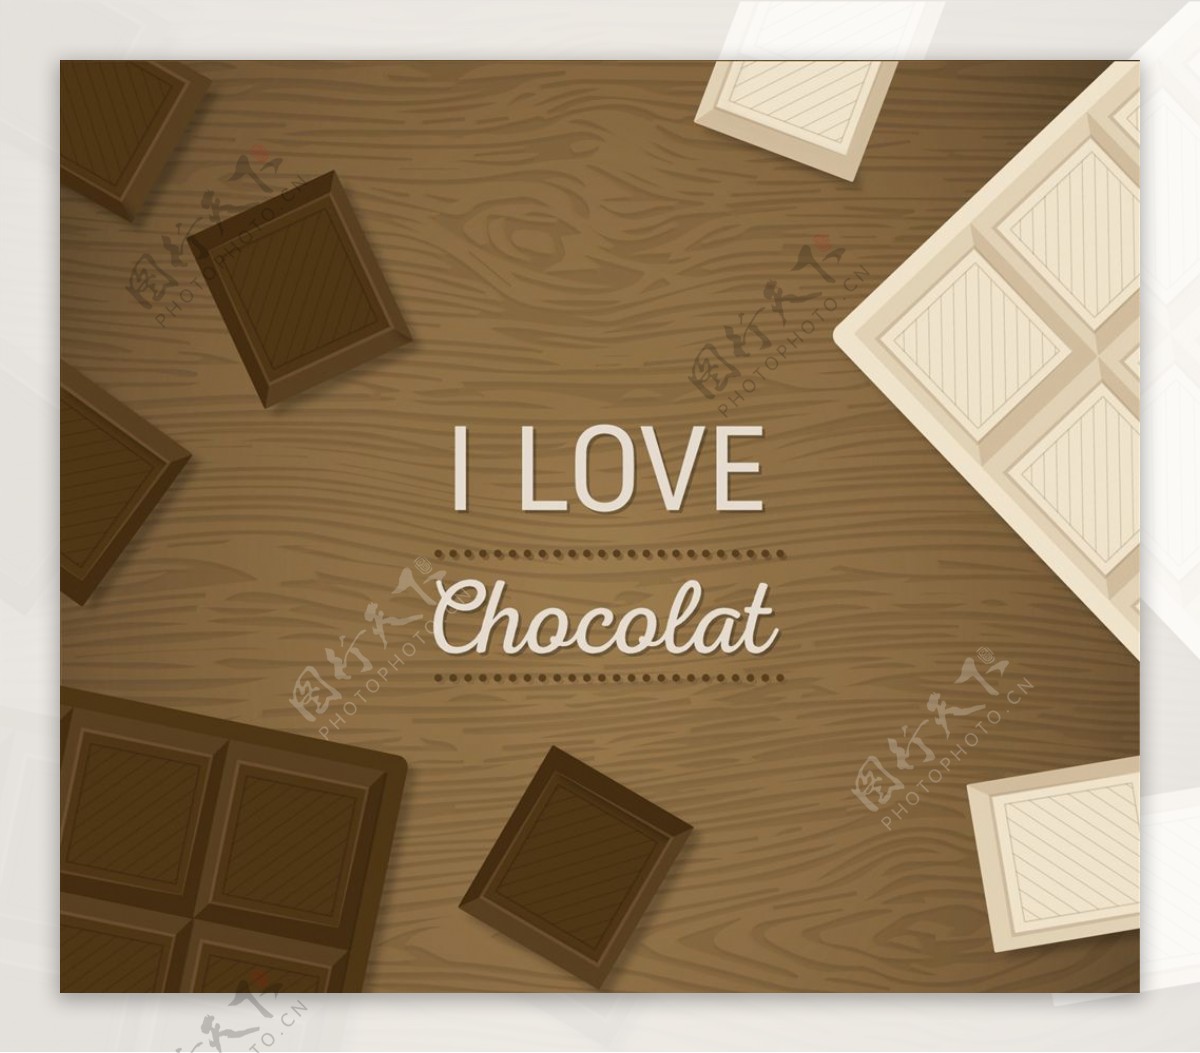 我爱巧克力背景